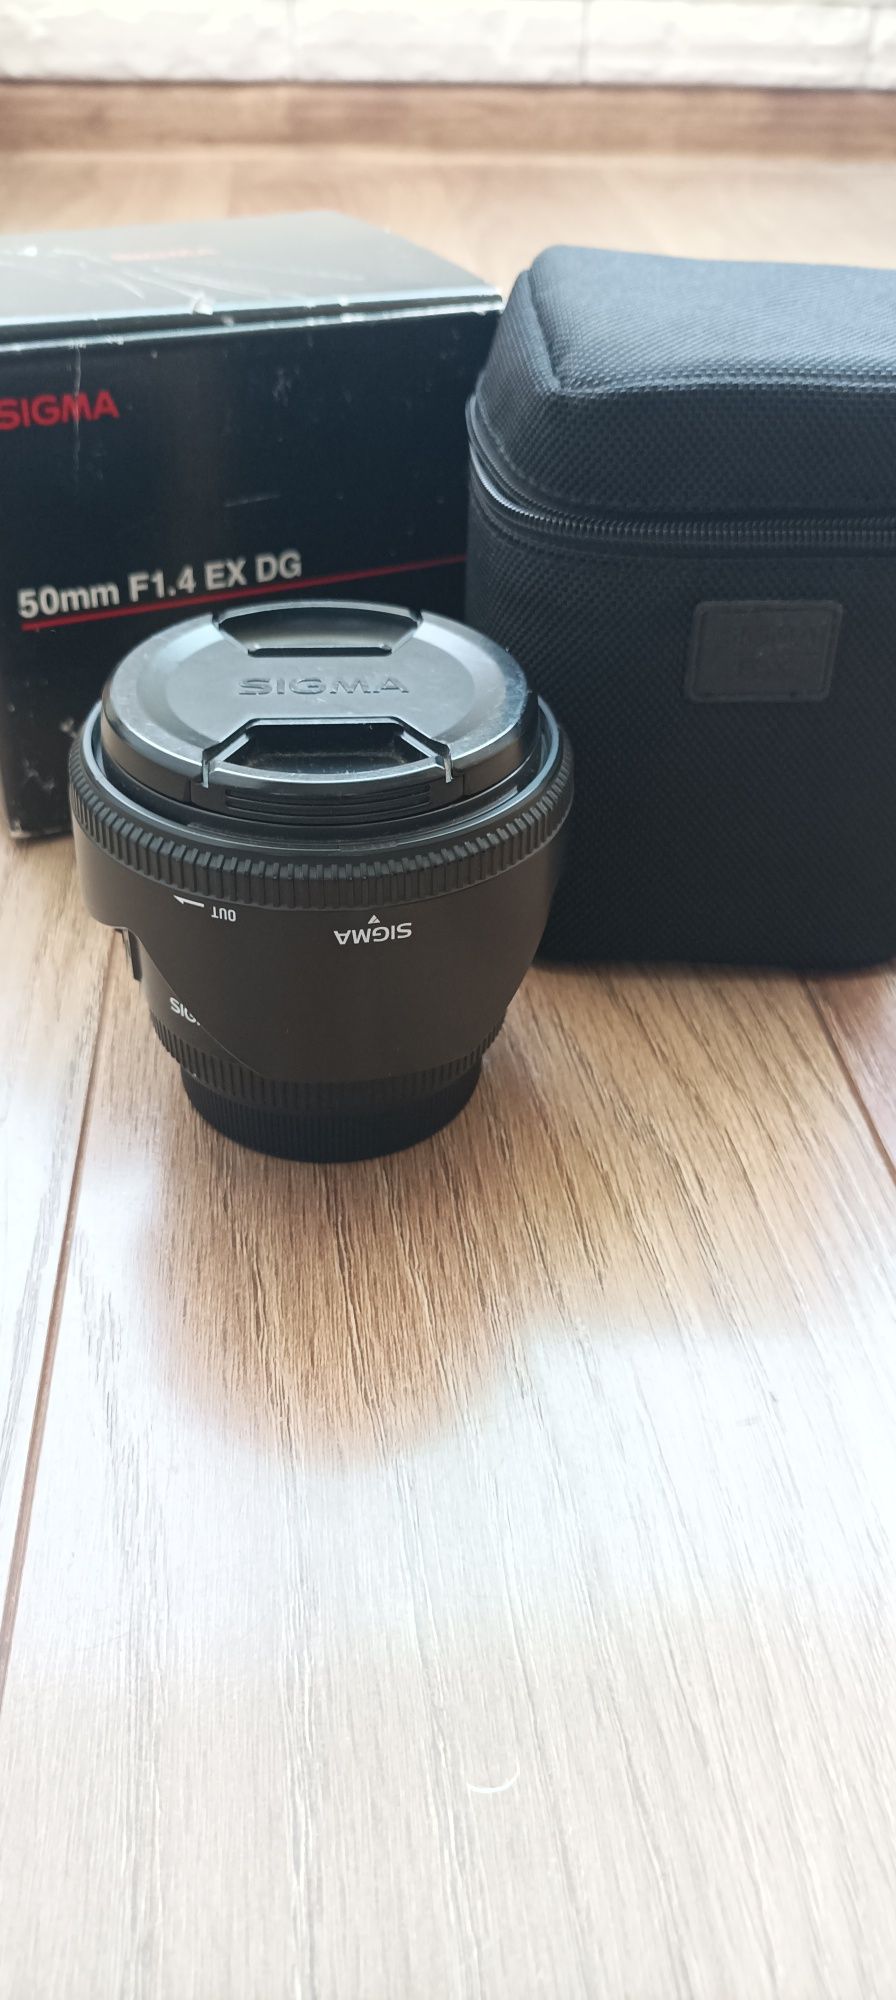 Sigma 50mm f 1.4 ex dg для Canon